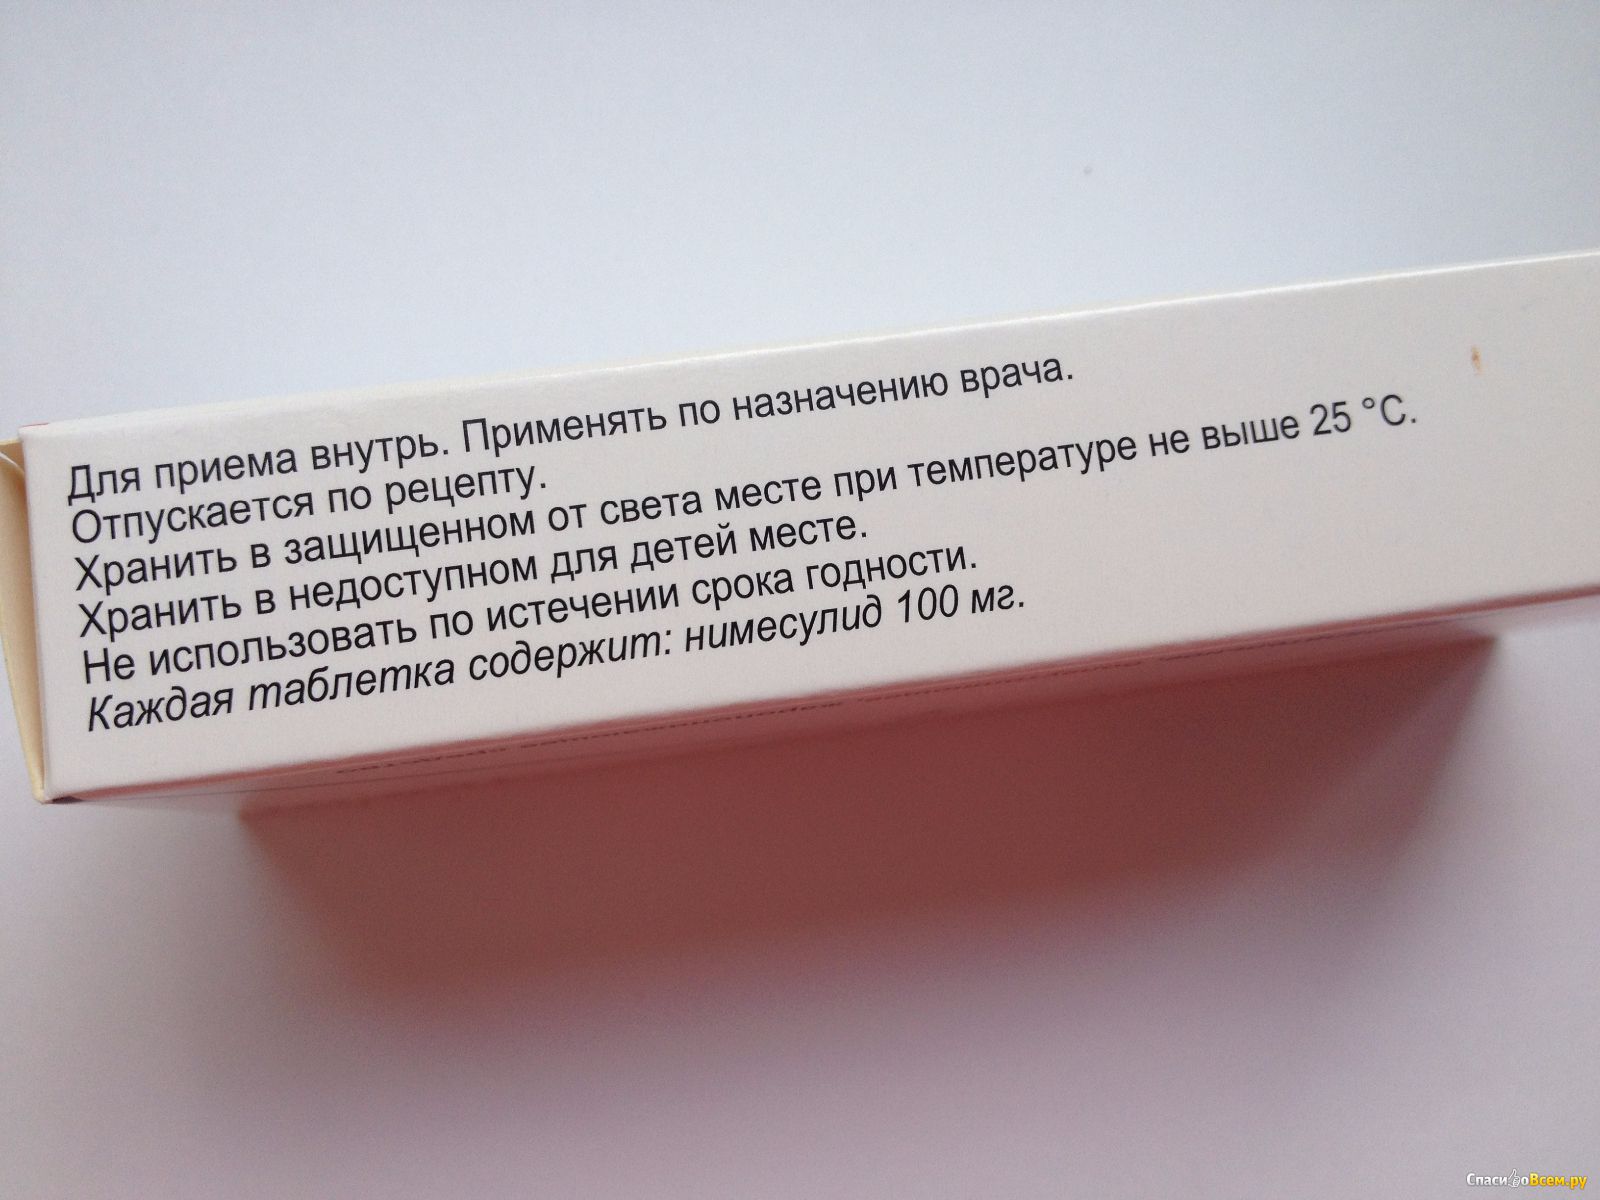 Нимесулид таблетки отзывы врачей. Нимесулид отпуская по рецепту. Нимесулид белая упаковка с красной полоской производитель.